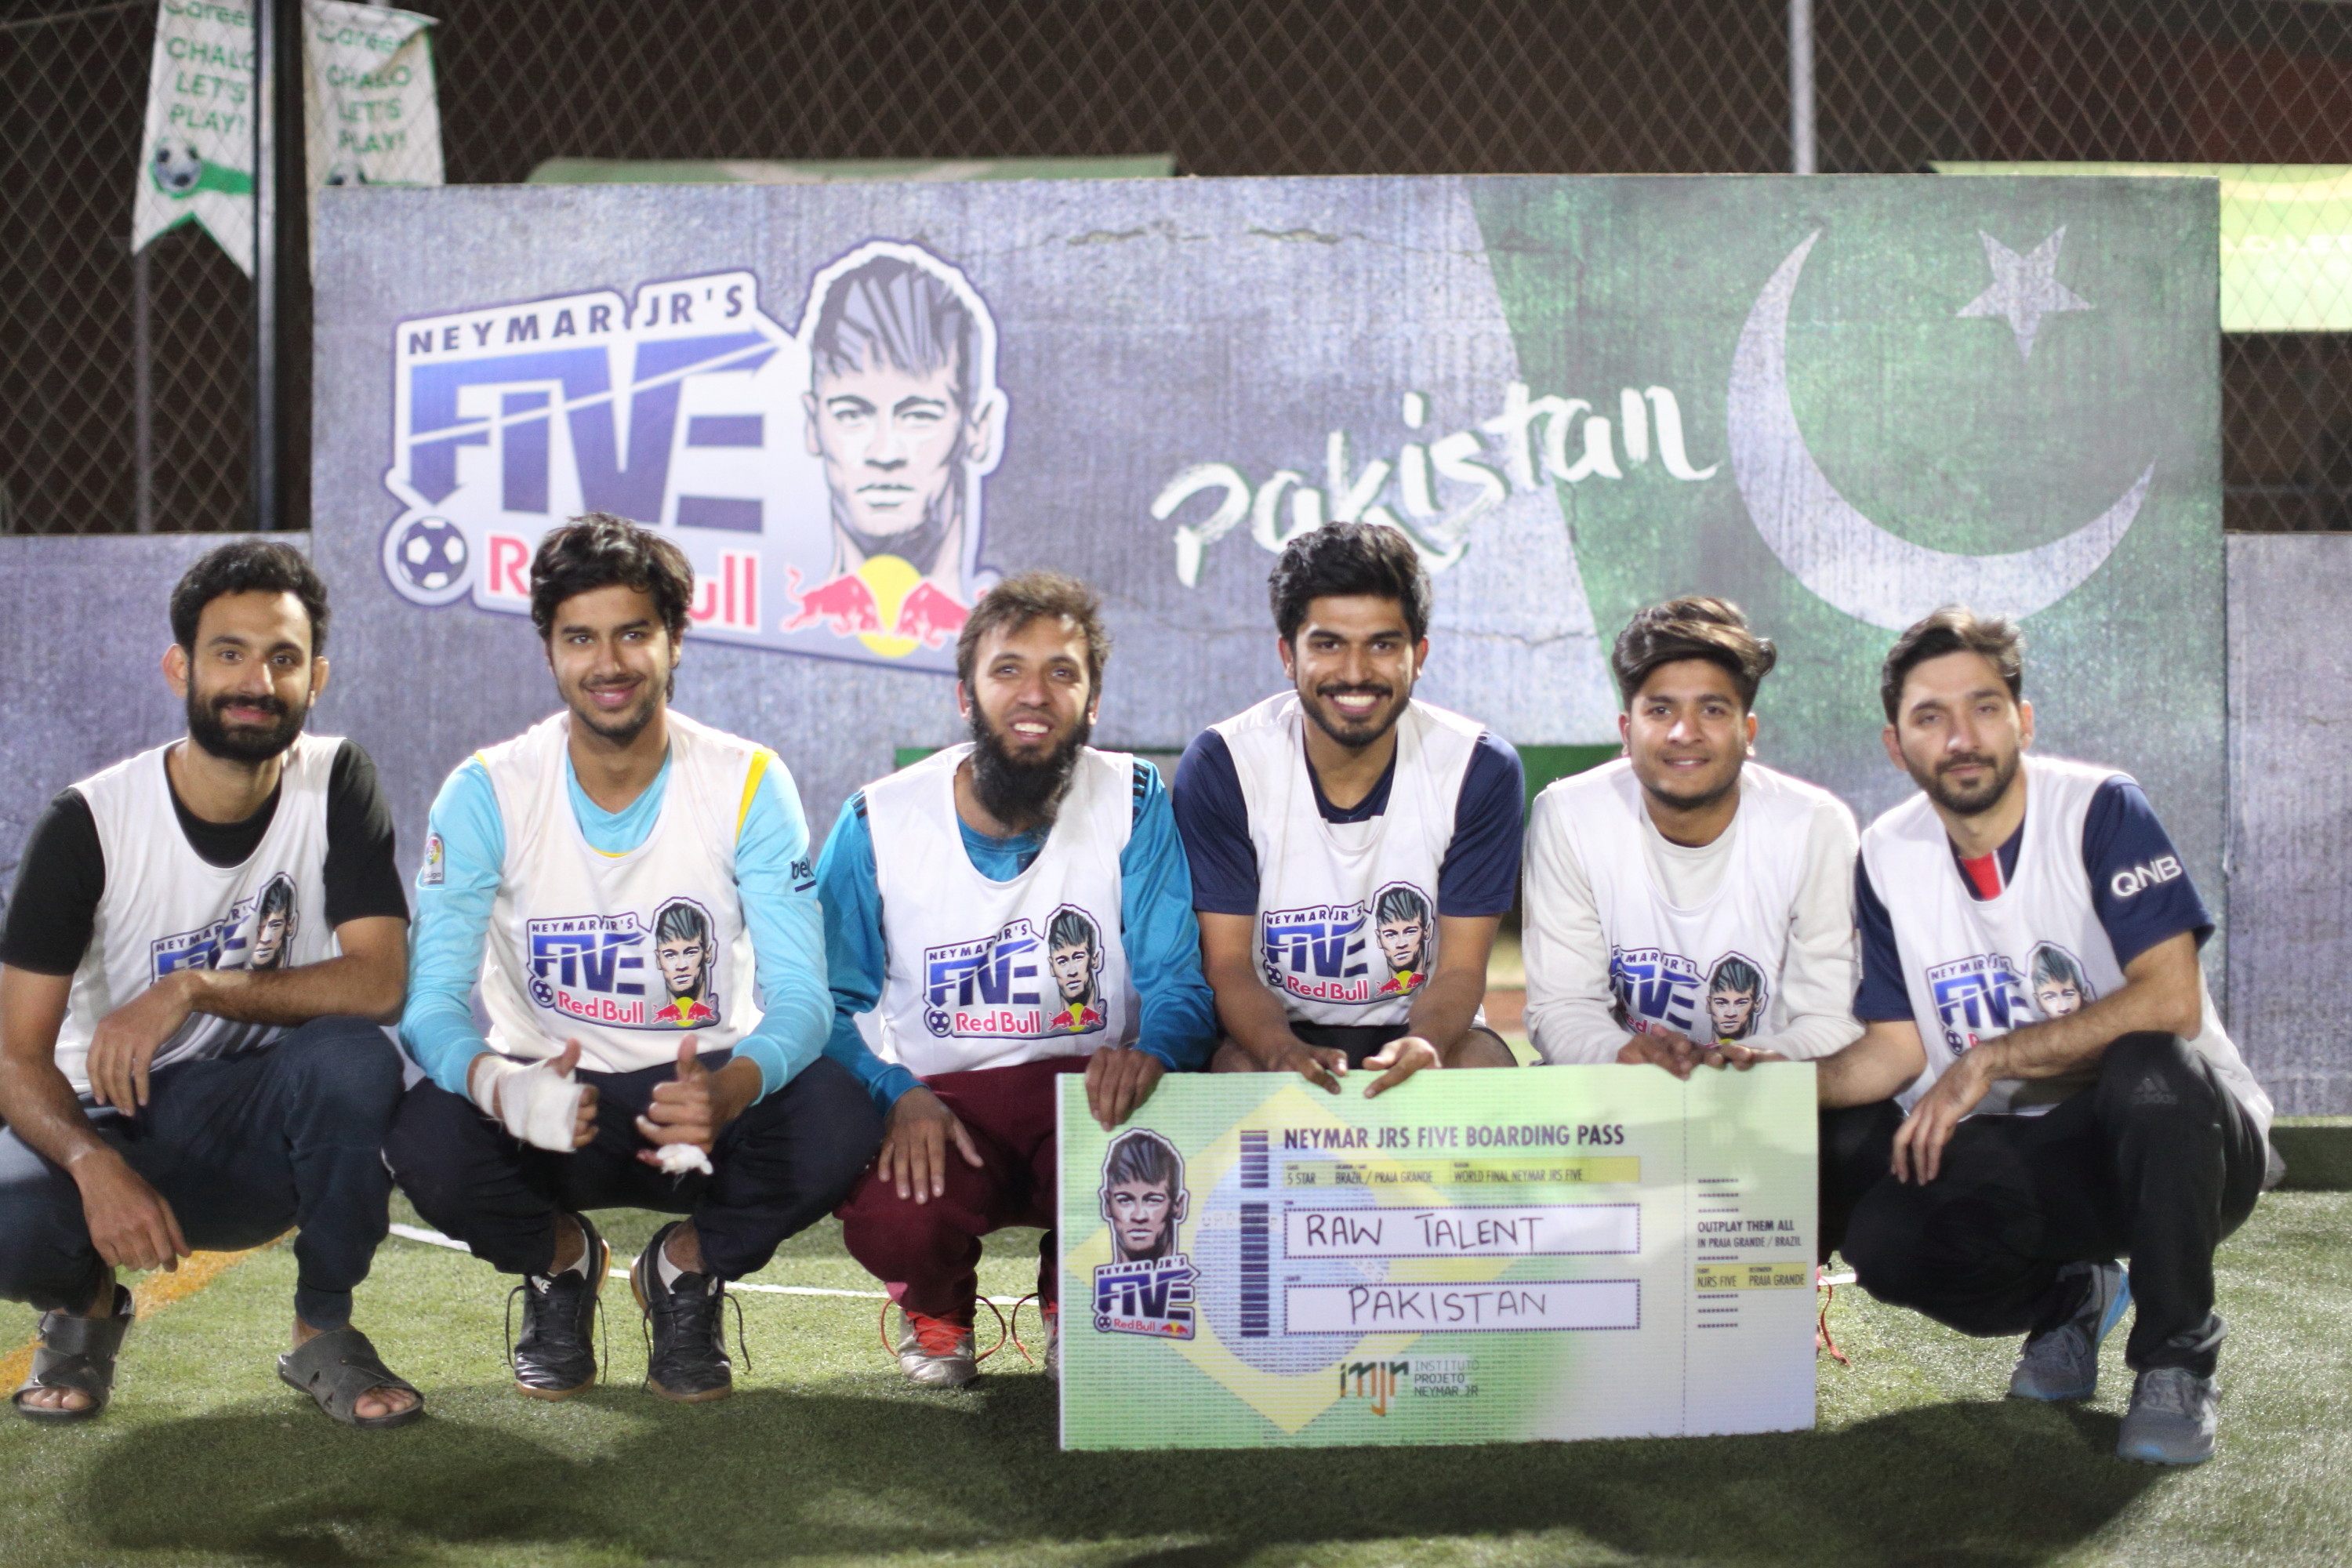 Raw Talent from Multan crowned Neymar Jr’s Five Pakistan Champions 2018